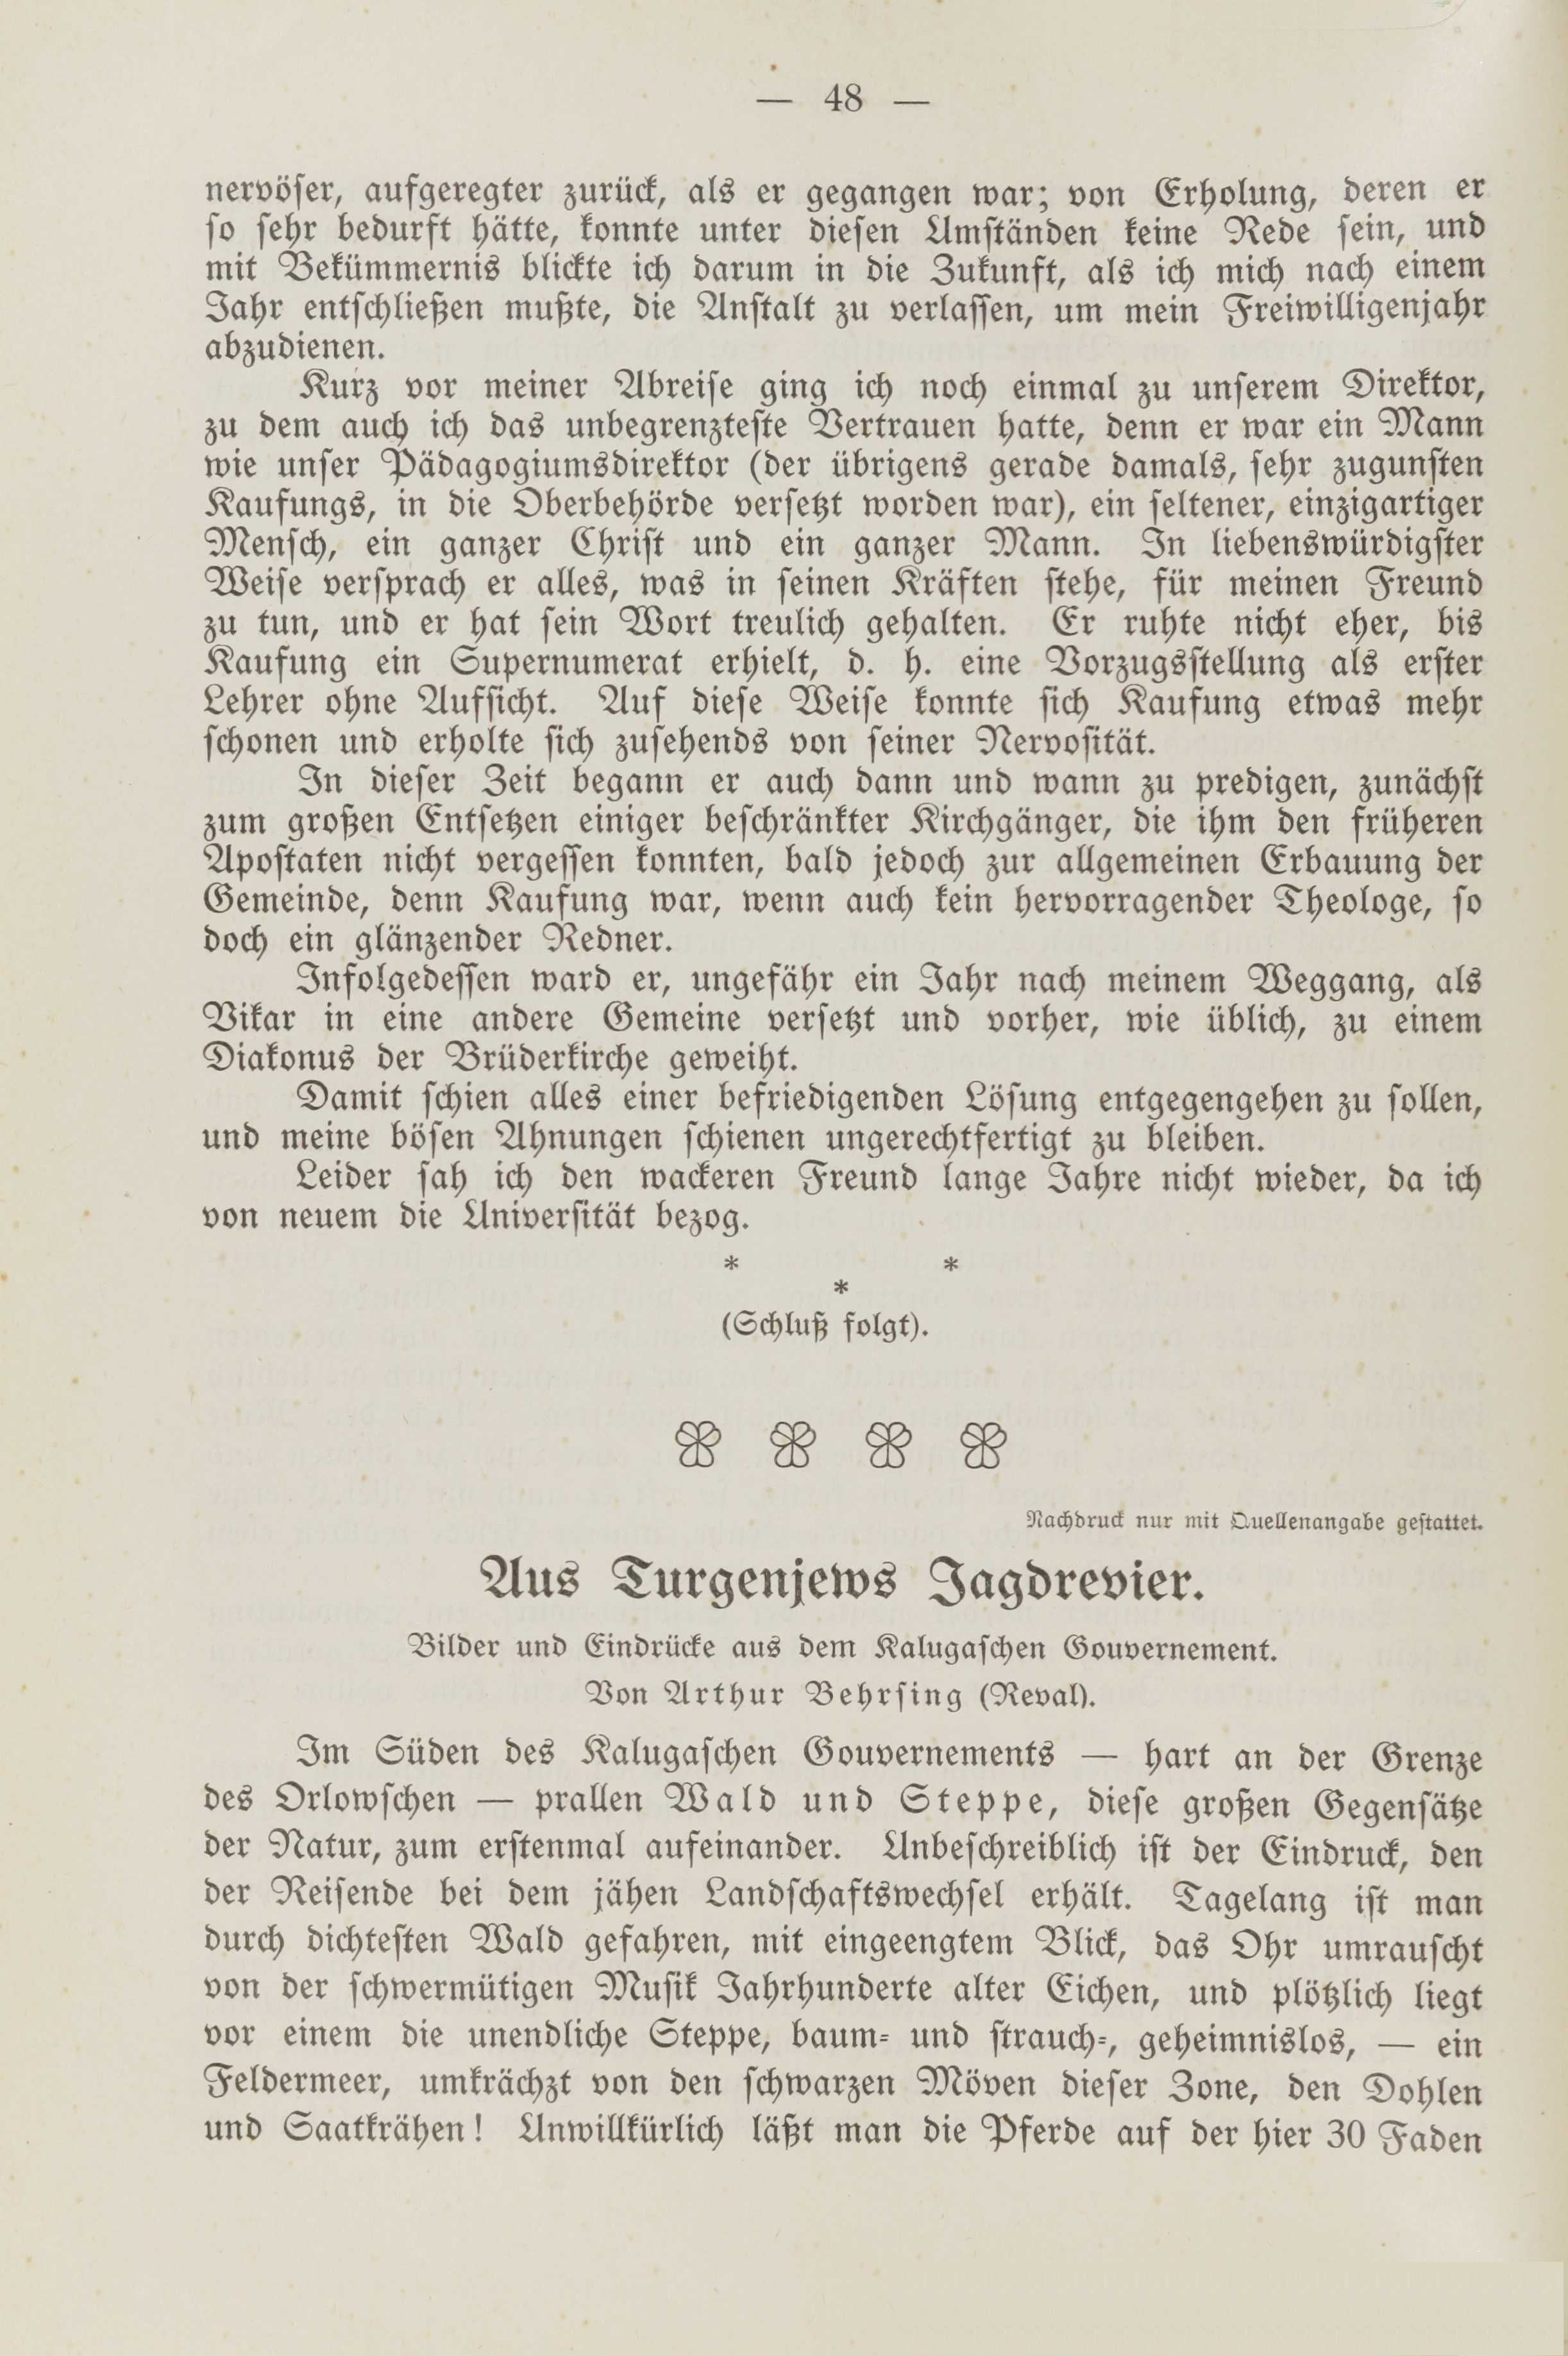 Deutsche Monatsschrift für Russland [2] (1913) | 52. (48) Põhitekst